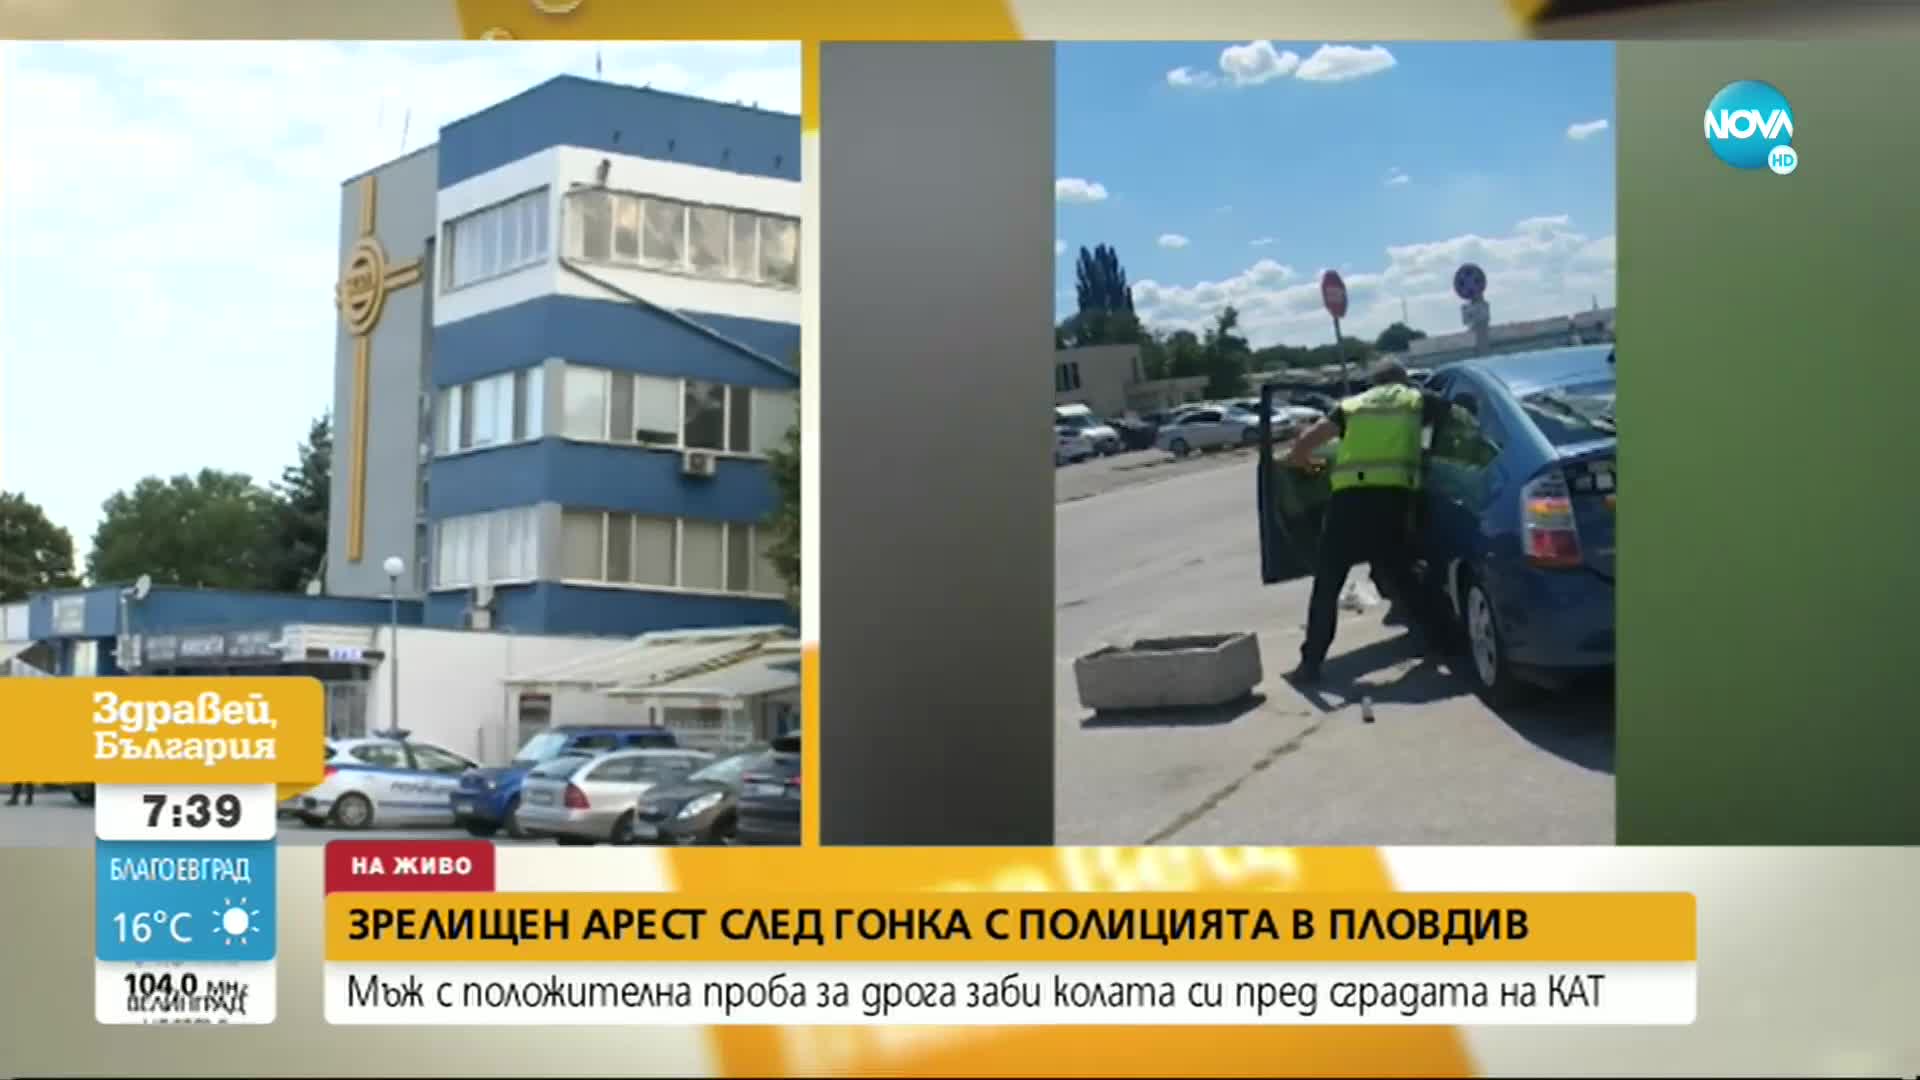 Водачът, забил колата си пред сградата на КАТ в Пловдив, след гонка с полицаите, е бил с отнета книж